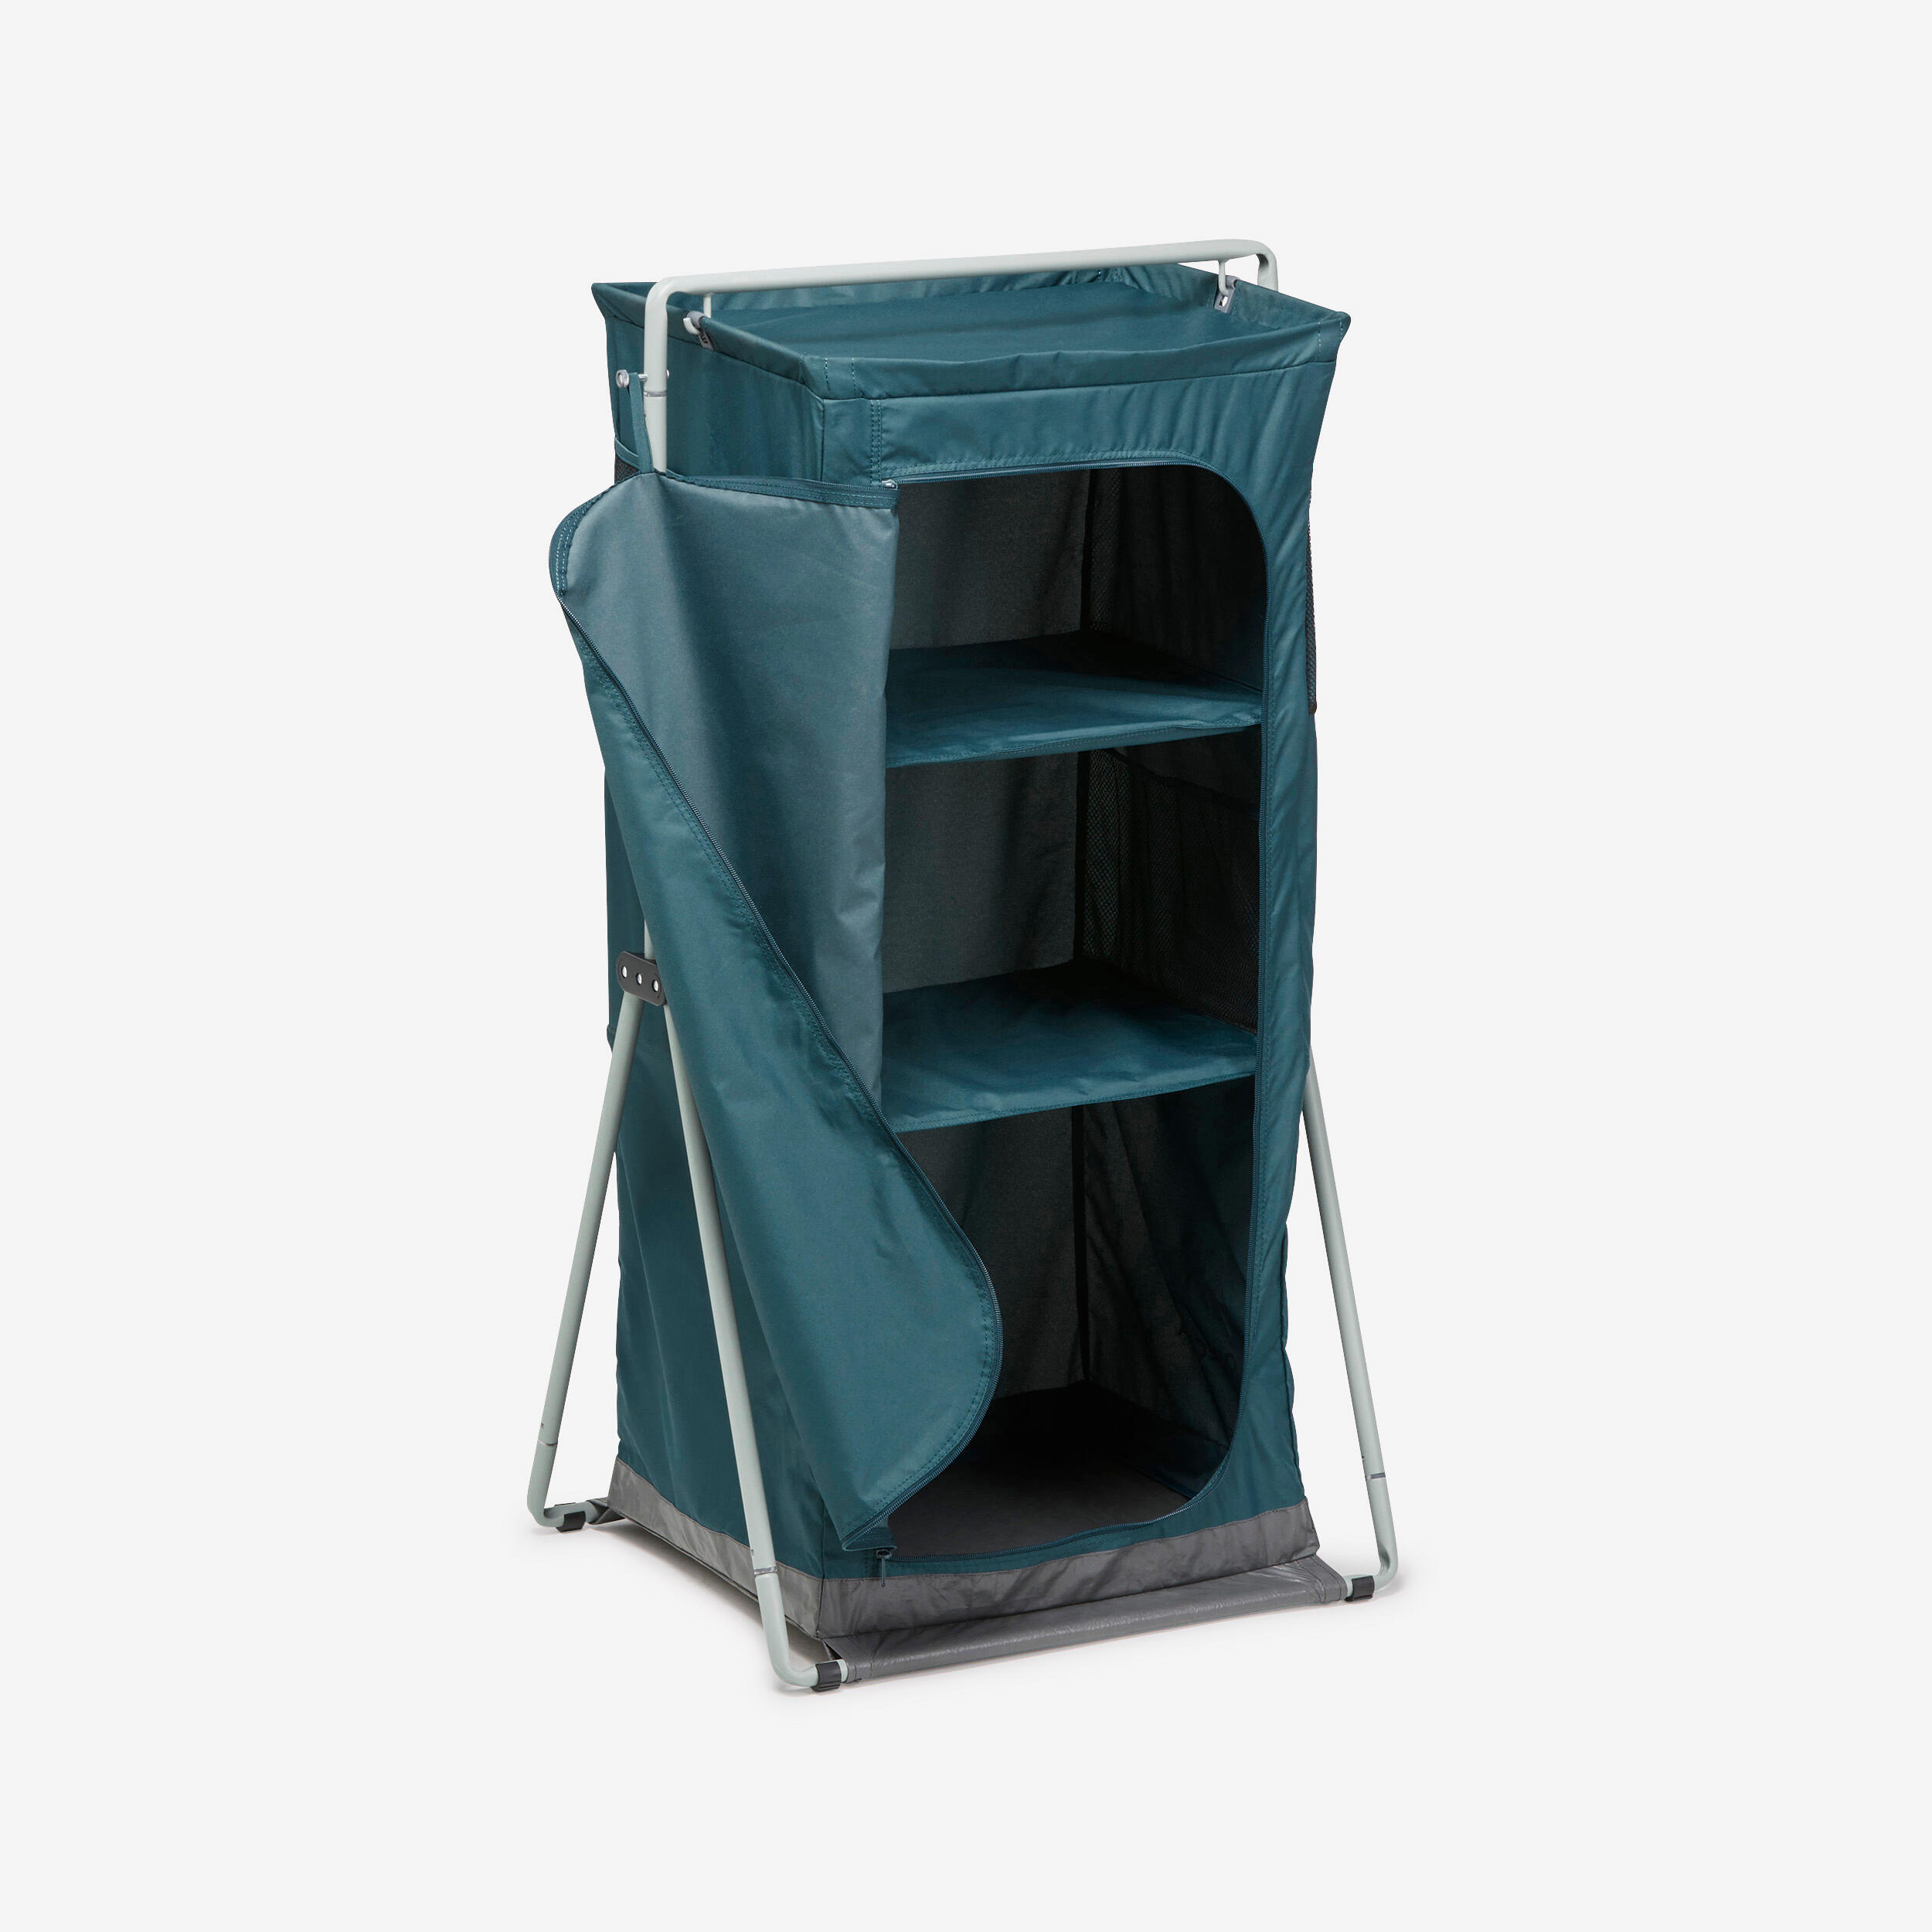 Folding and compact camping wardrobe - Basic 1/6